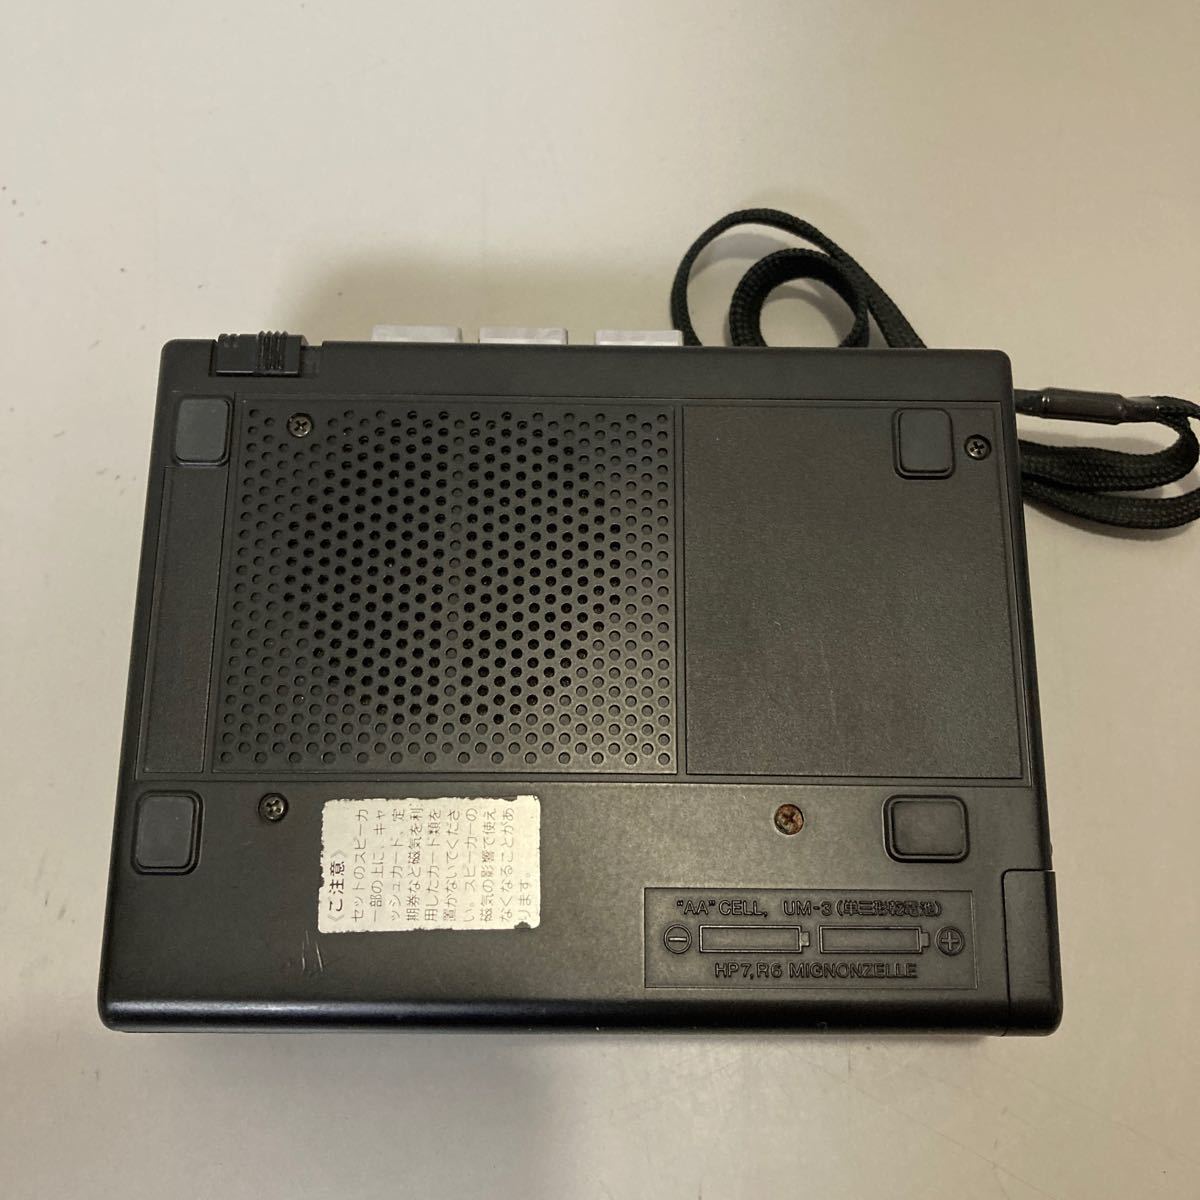 Sanyo Cassette Recorder 三洋 サンヨー カセットレコーダー MR-54 説明書付き_画像5